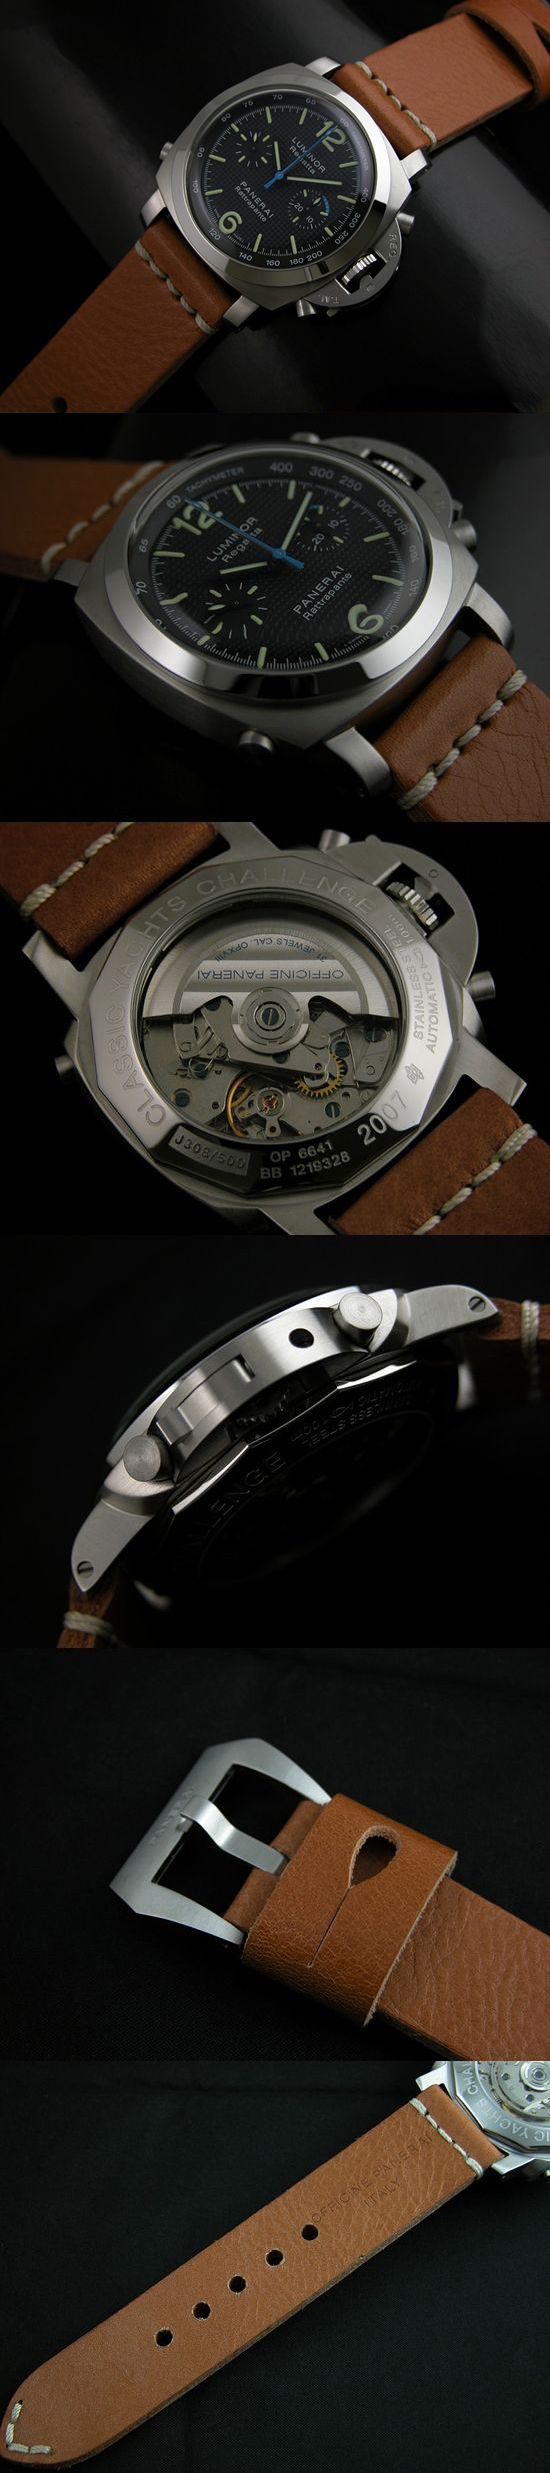 おしゃれなブランド時計がパネライ-ルミノール-PANERAI-PAM286-bi-男性用を提供します.